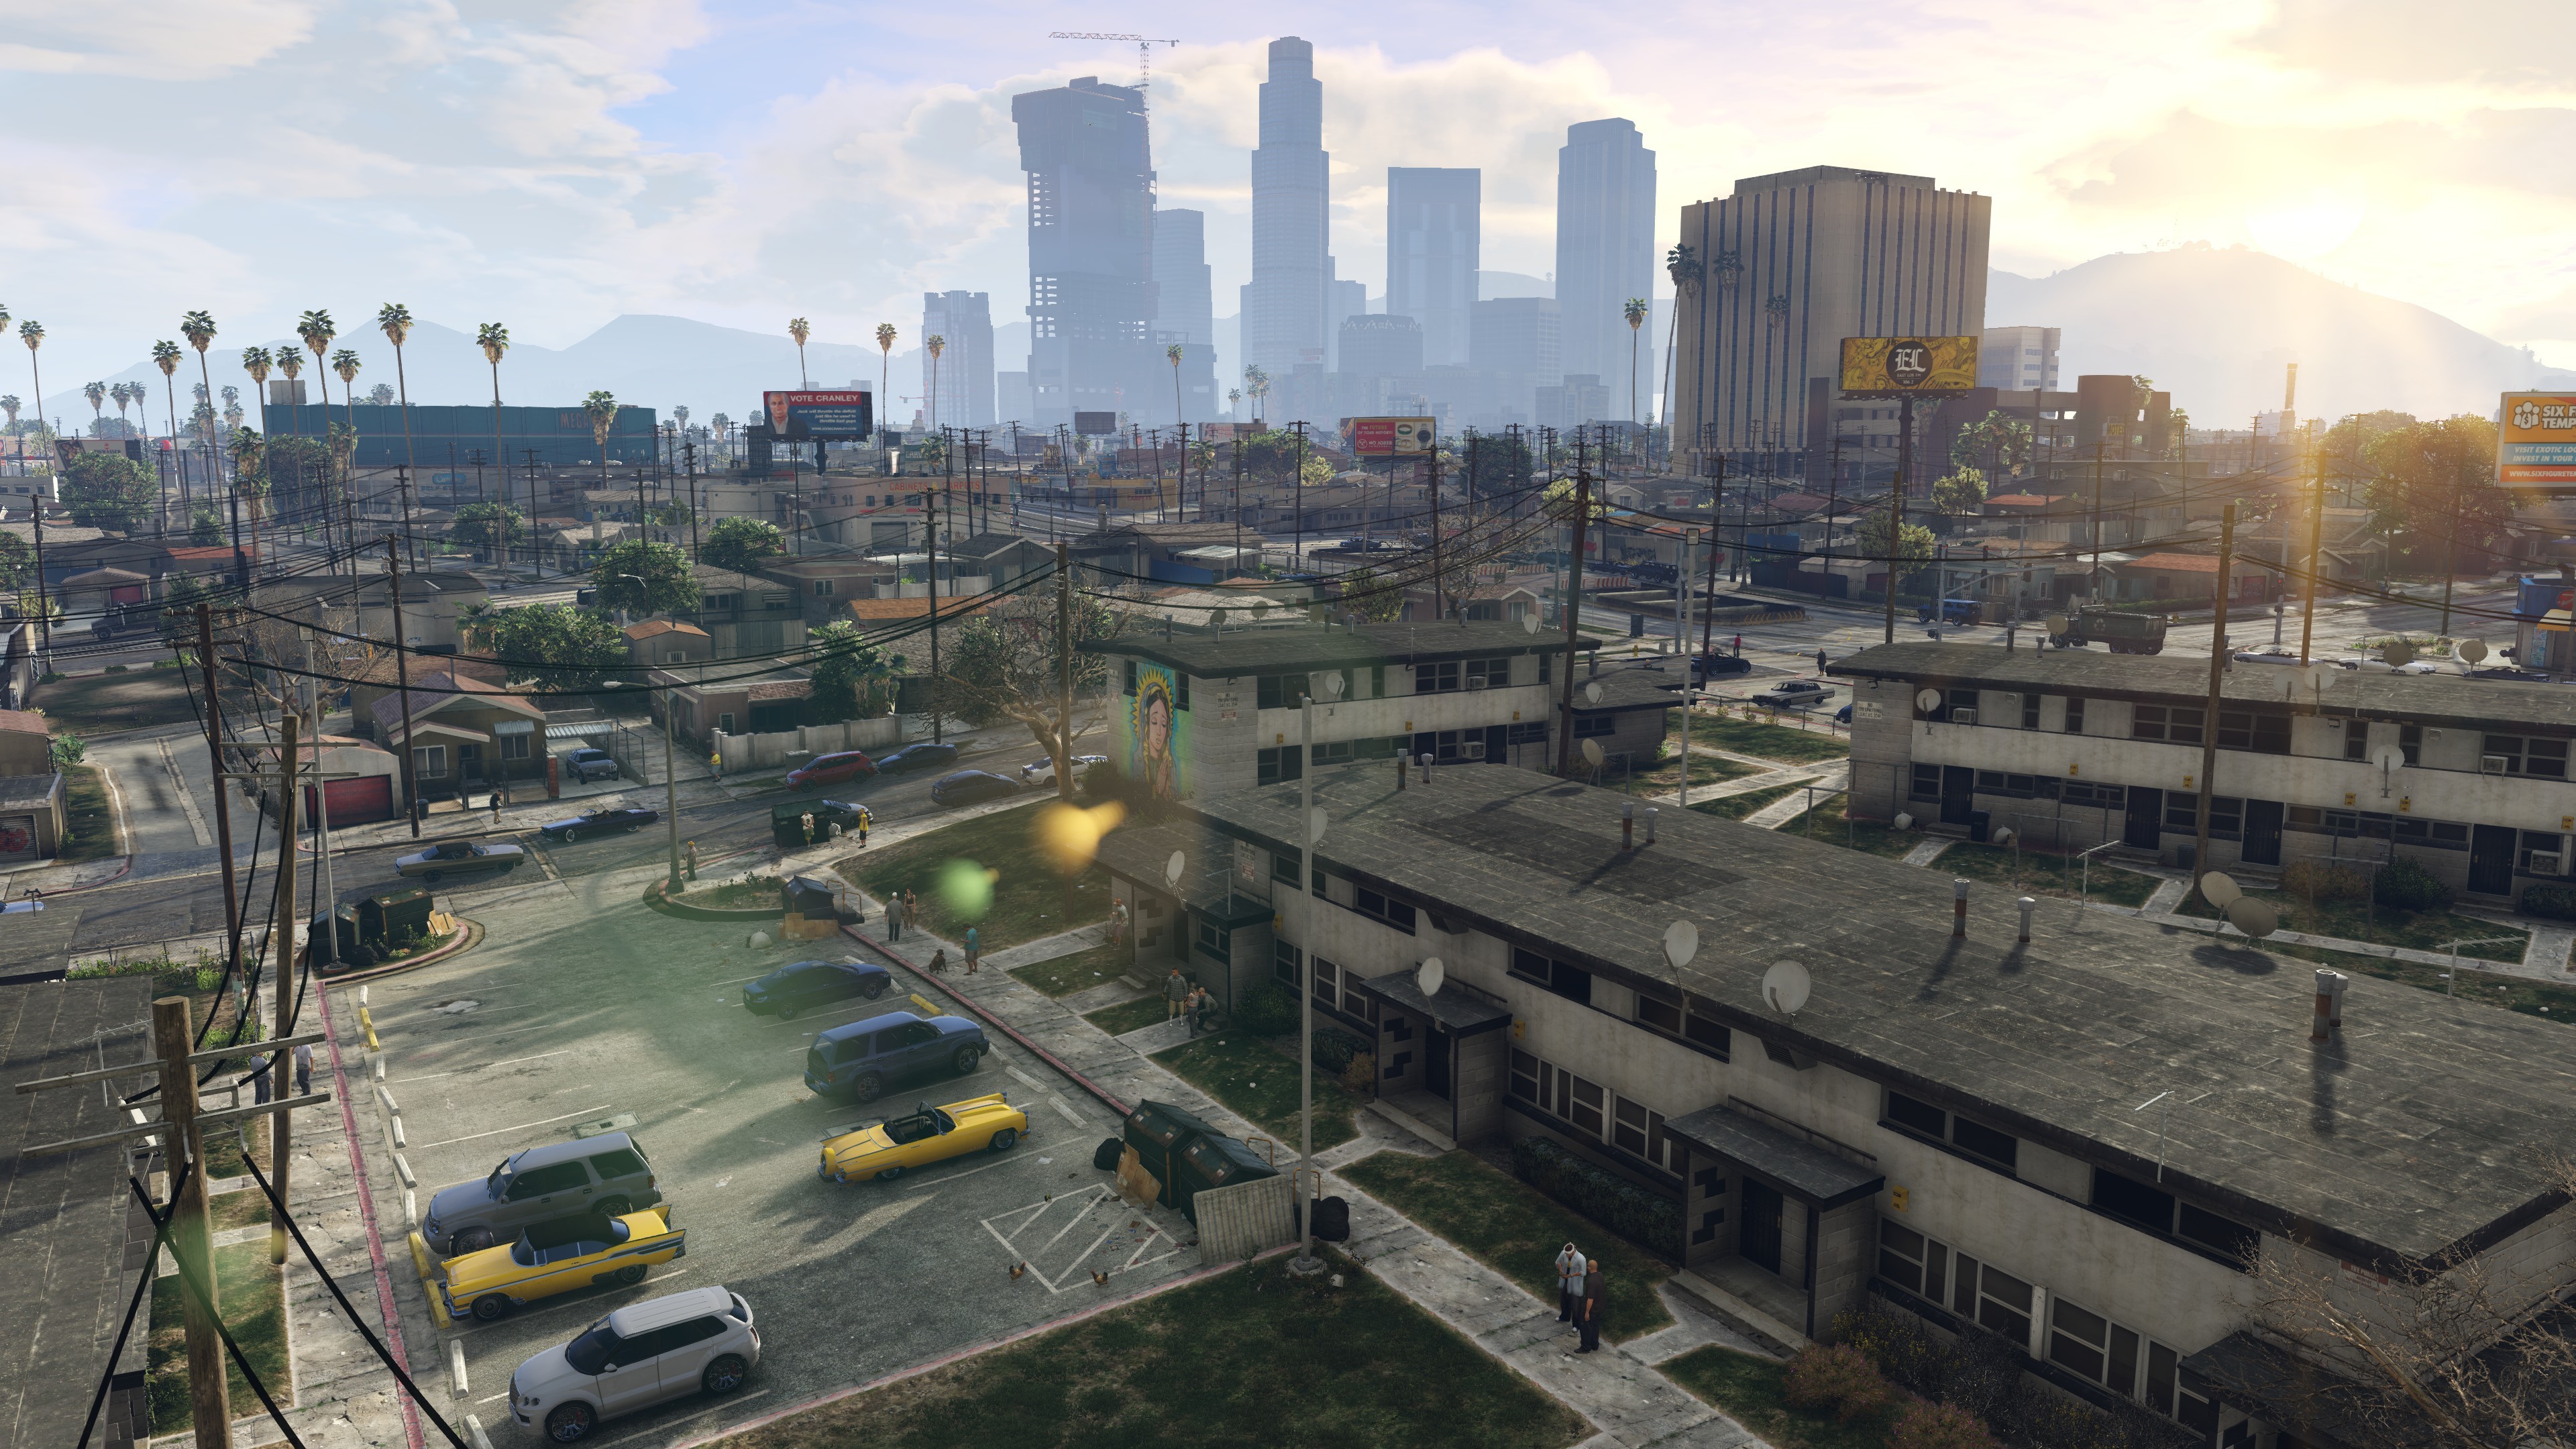 Grand Theft Auto V Grand Theft Auto V PC PC Gaming Rockstar Games City Car 3840x2160